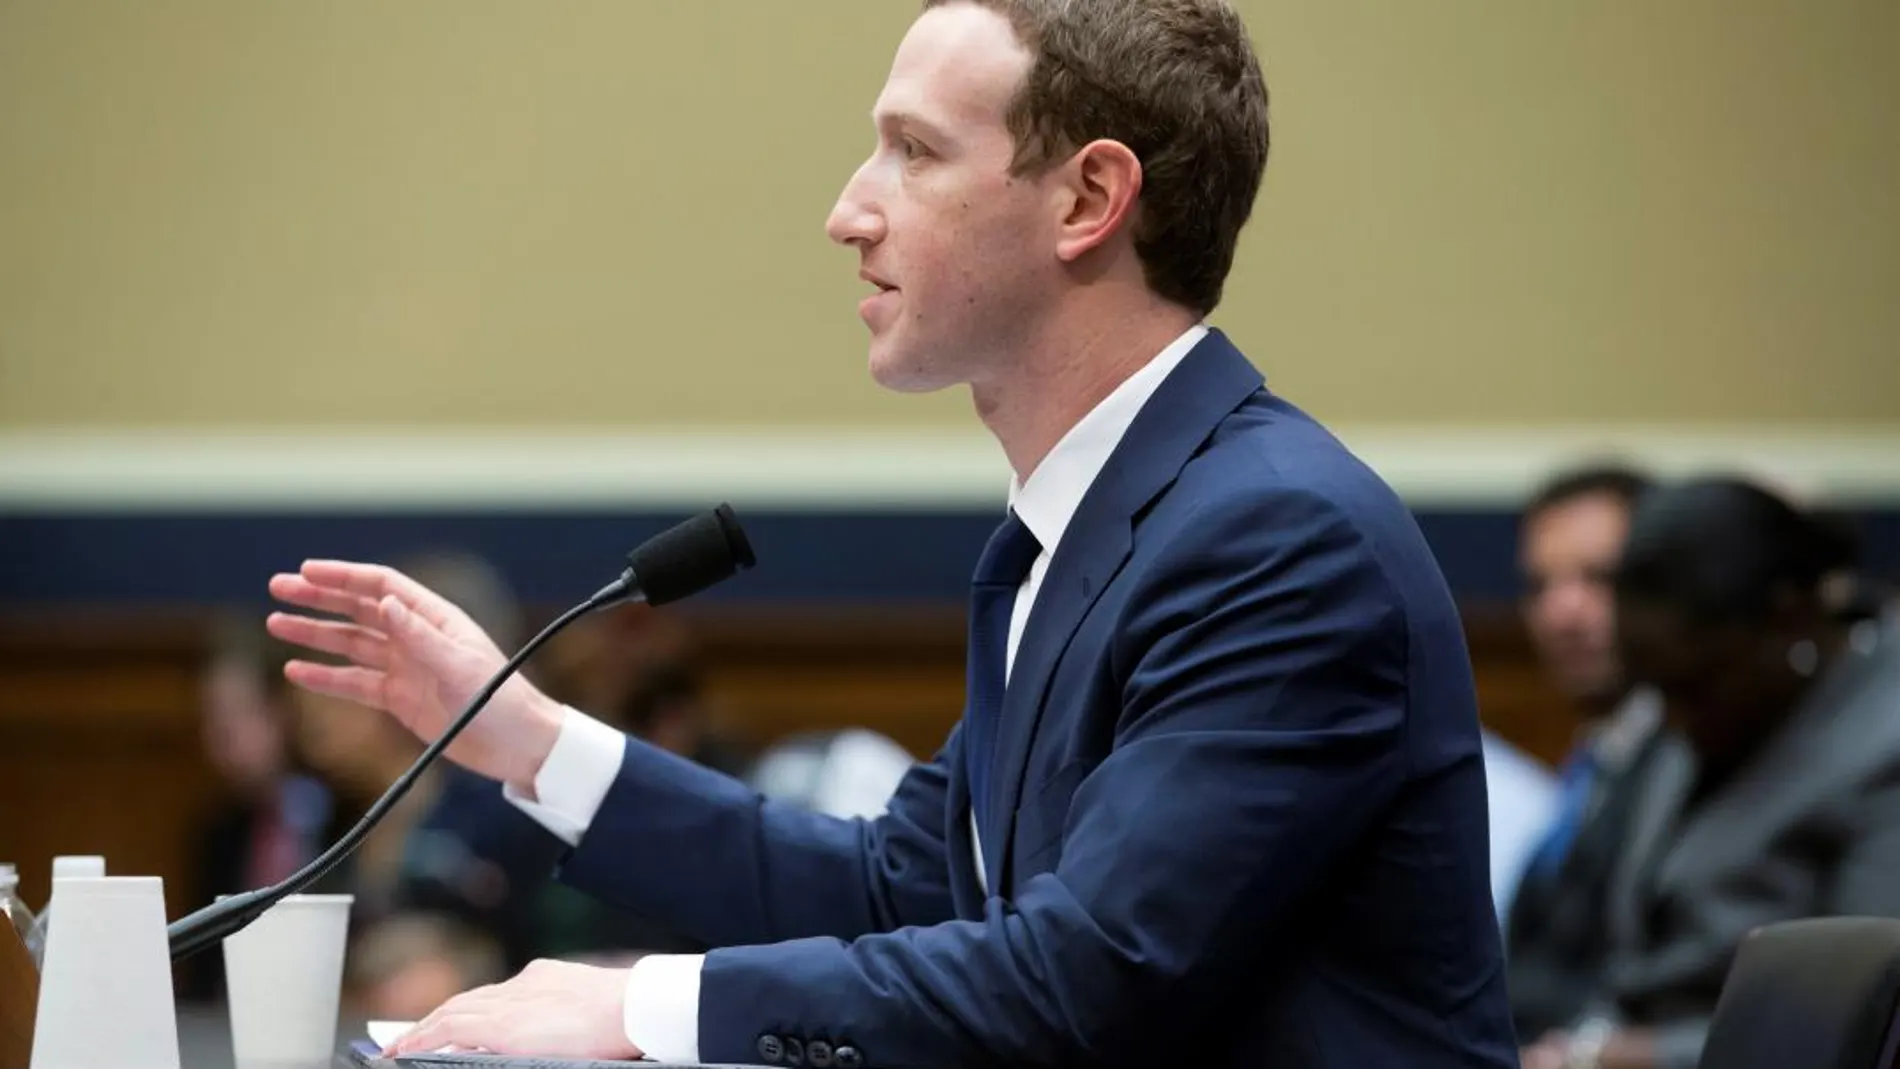 El fundador y presidente ejecutivo de Facebook, Mark Zuckerberg, testifica ante el Comité del Congreso sobre Energía y Comercio en el Capitolio de Washington DC